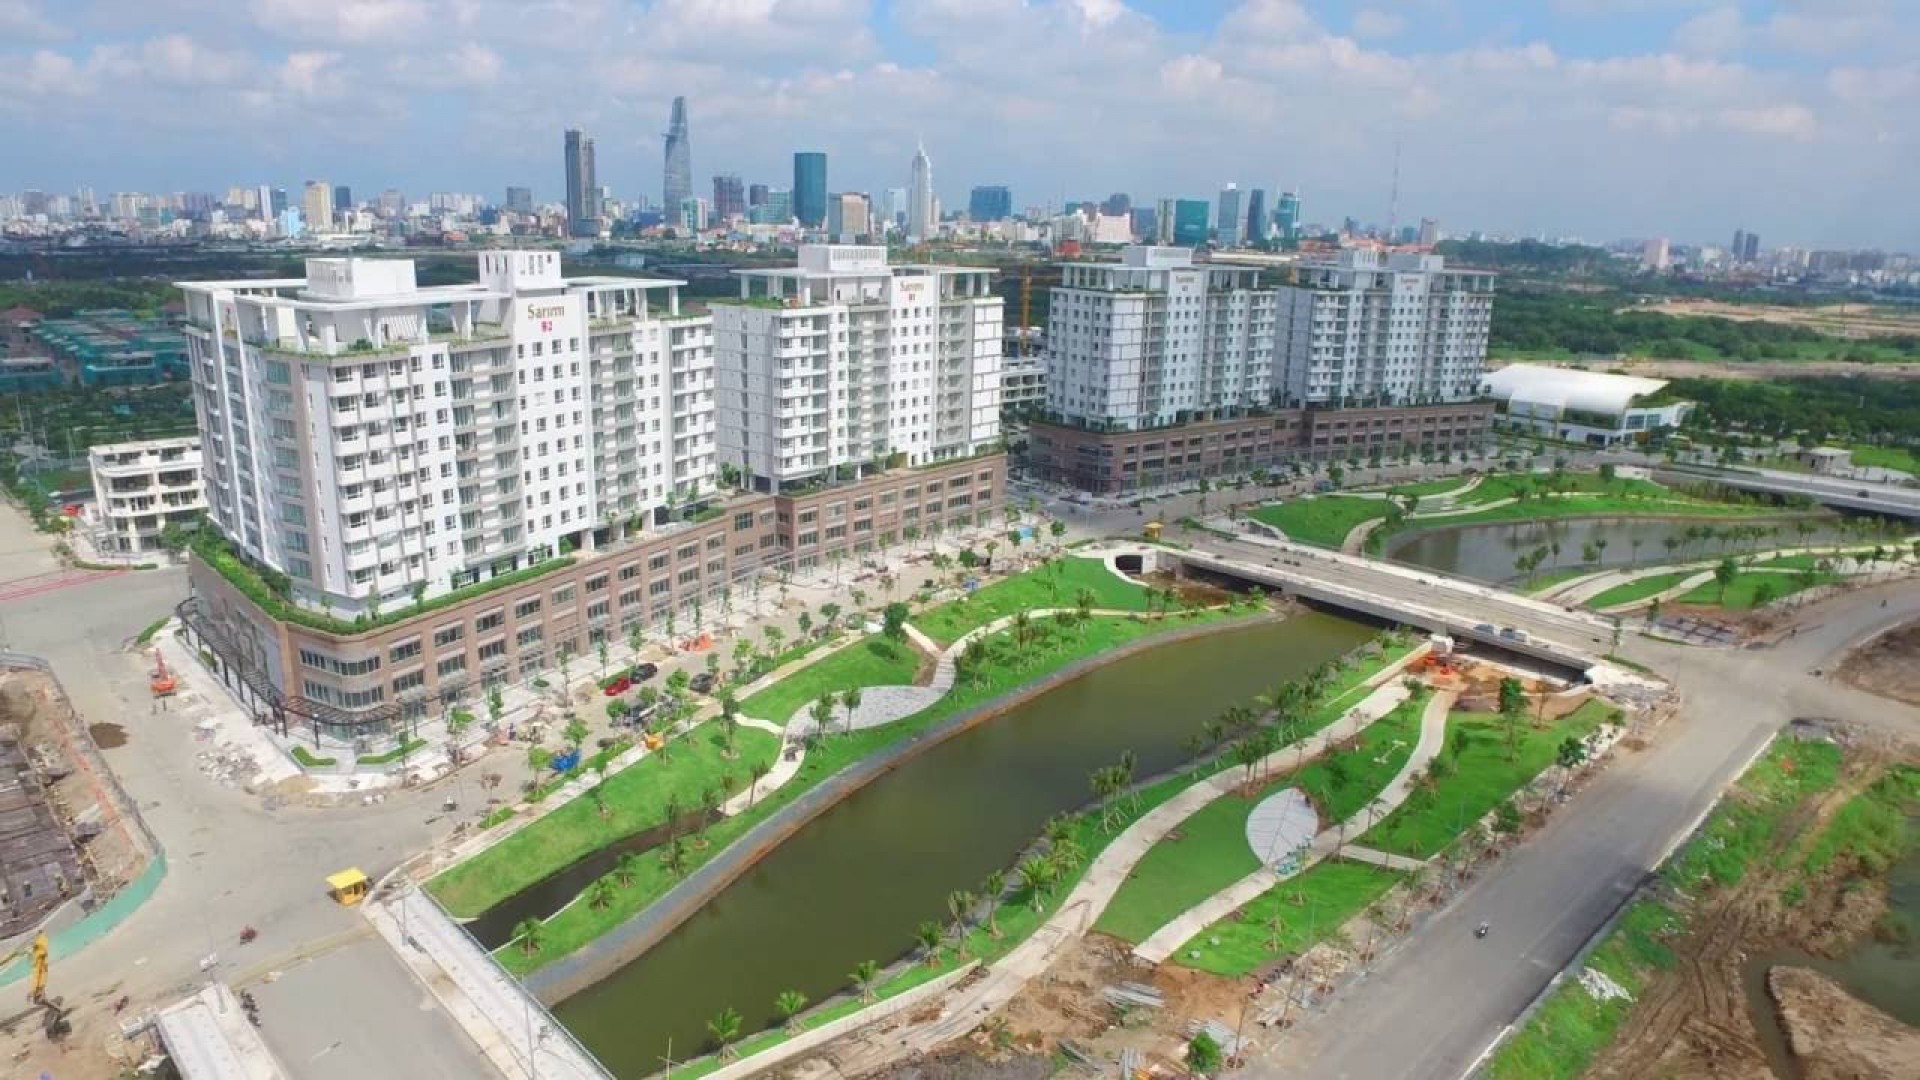 Đại học Khoa học Tự nhiên Thành phố Hồ Chí Minh điểm chuẩn hạ “sập sàn”?